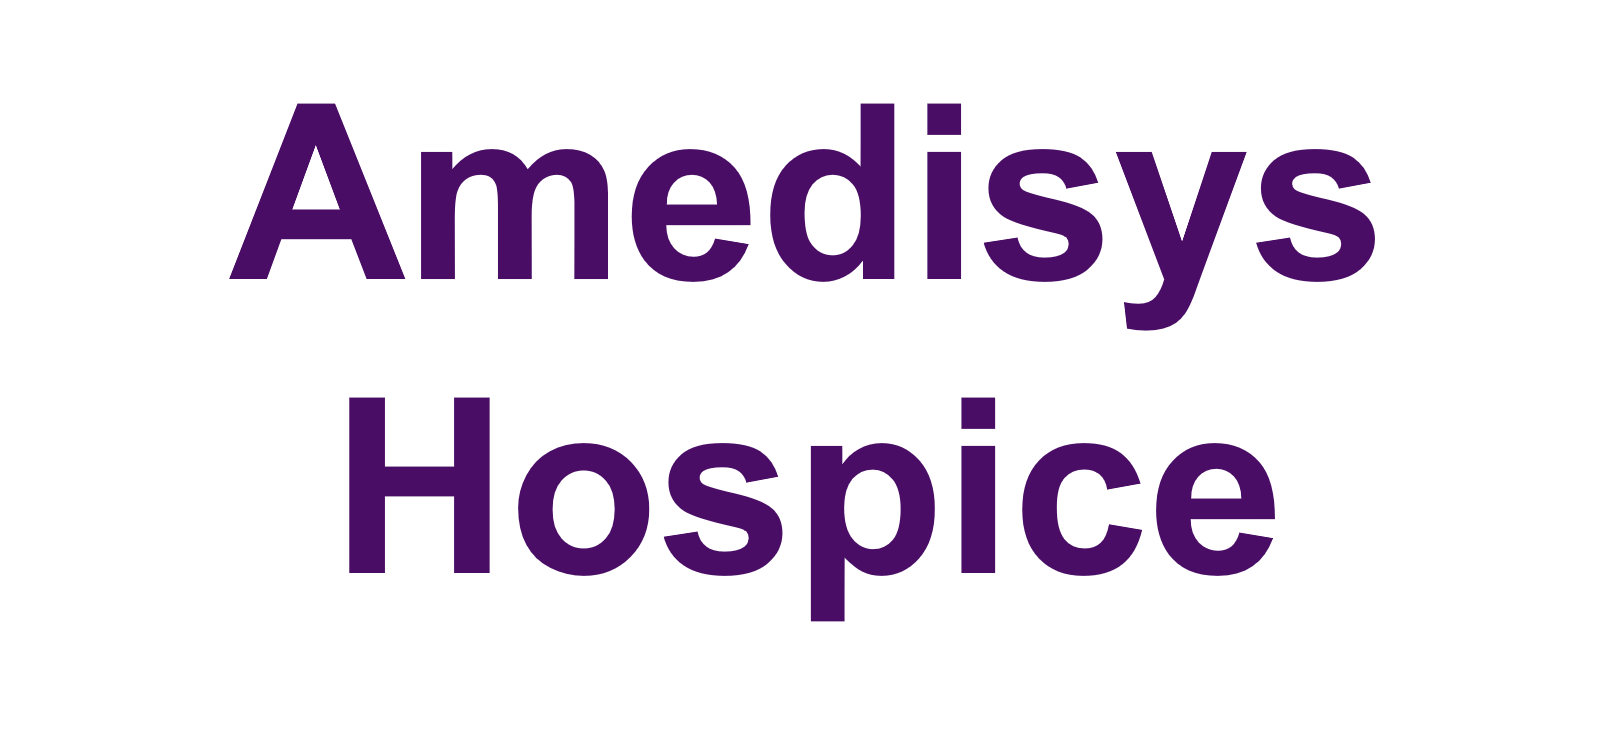 7b. Amedisys Hospice (Friend)